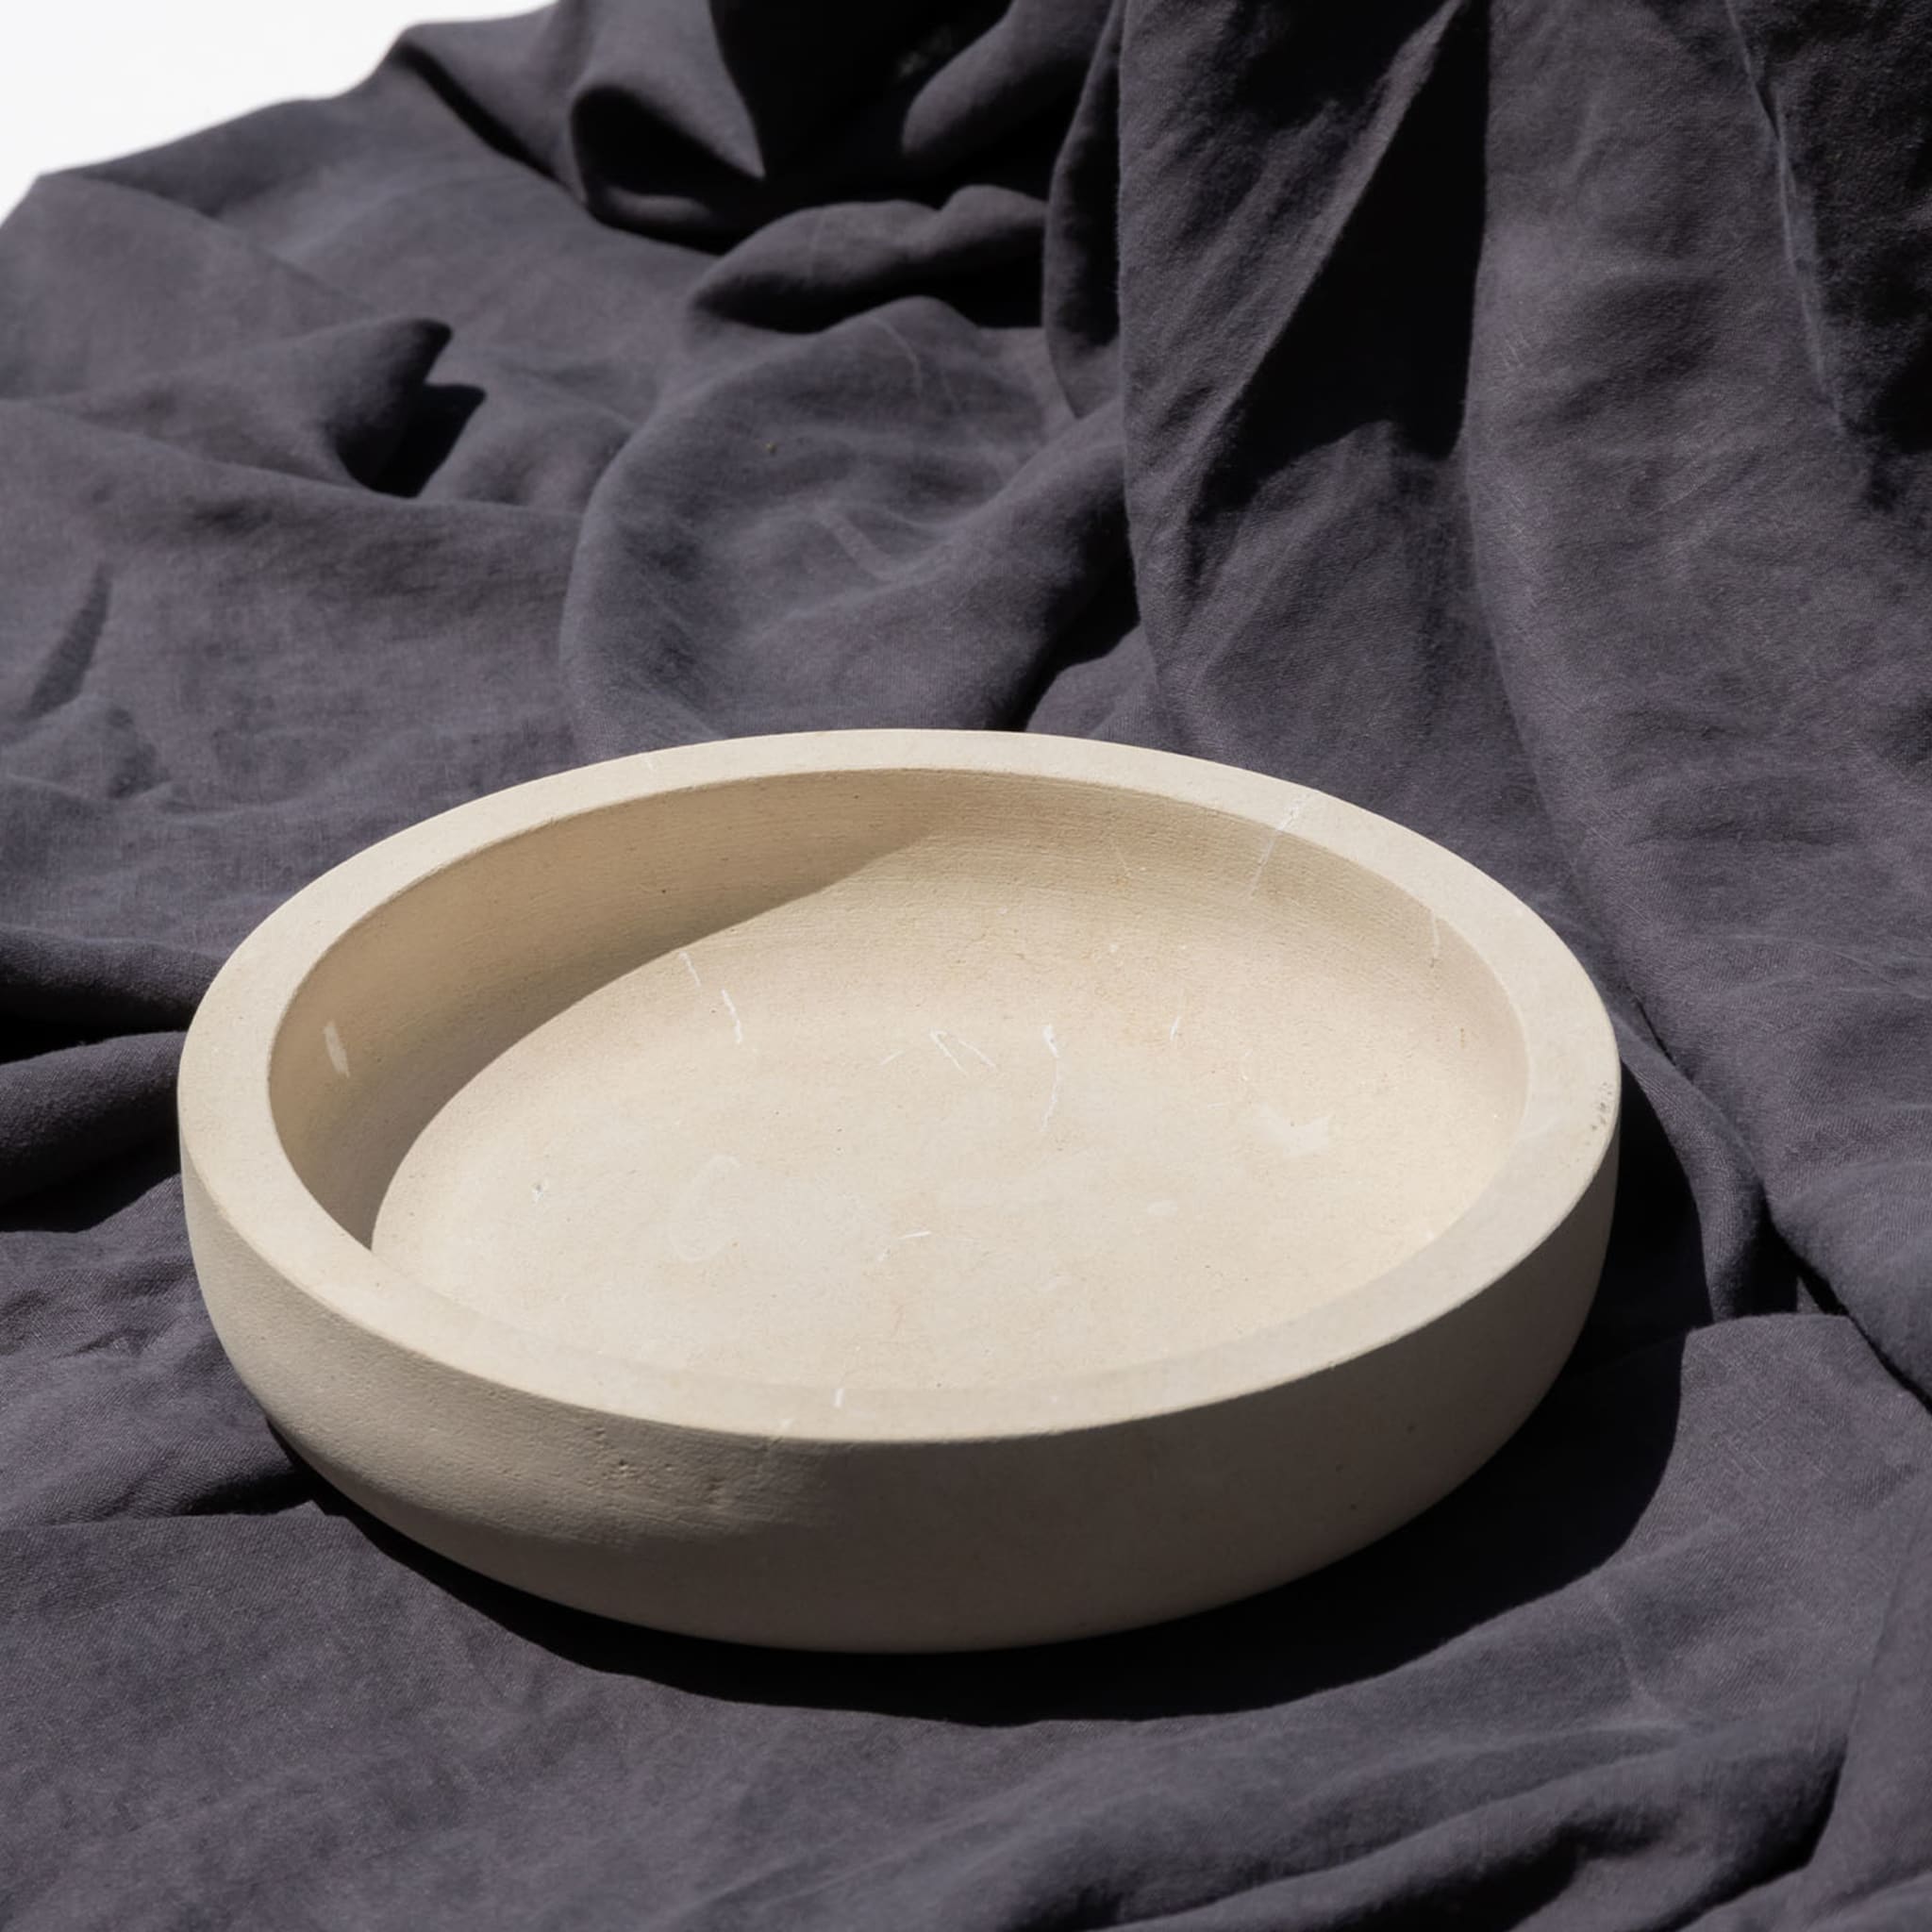 Diogenea - A Tale of Bowls Lecce Stone Bowl - Alternative view 2